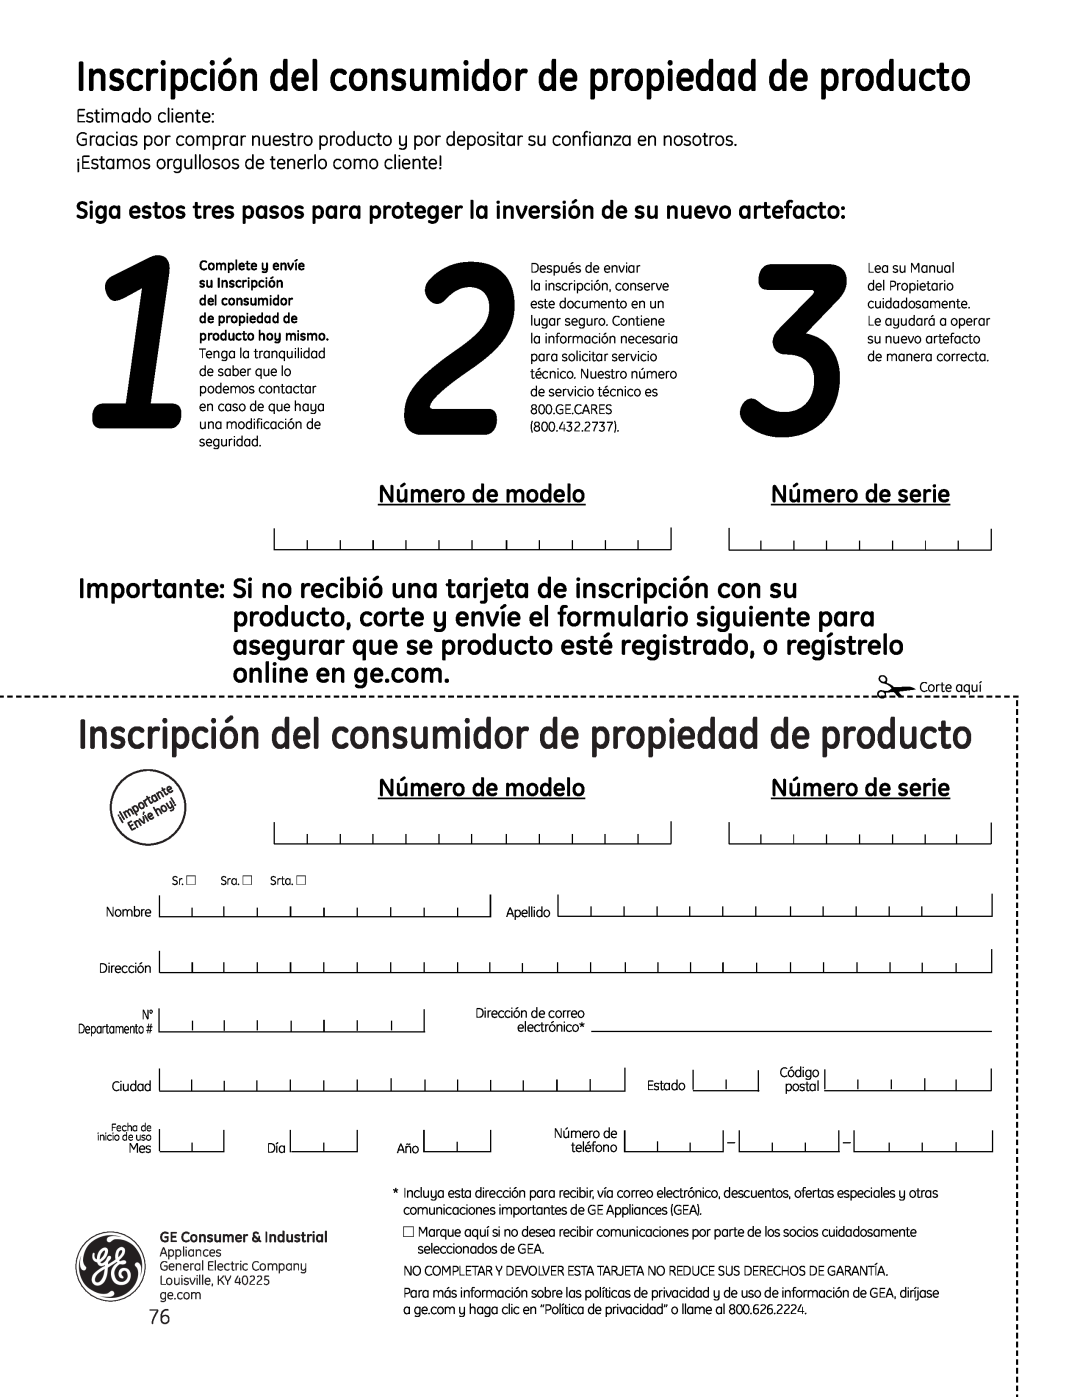 GE JP256 installation instructions Inscripción del consumidor de propiedad de producto, Número de modelo, Número de serie 